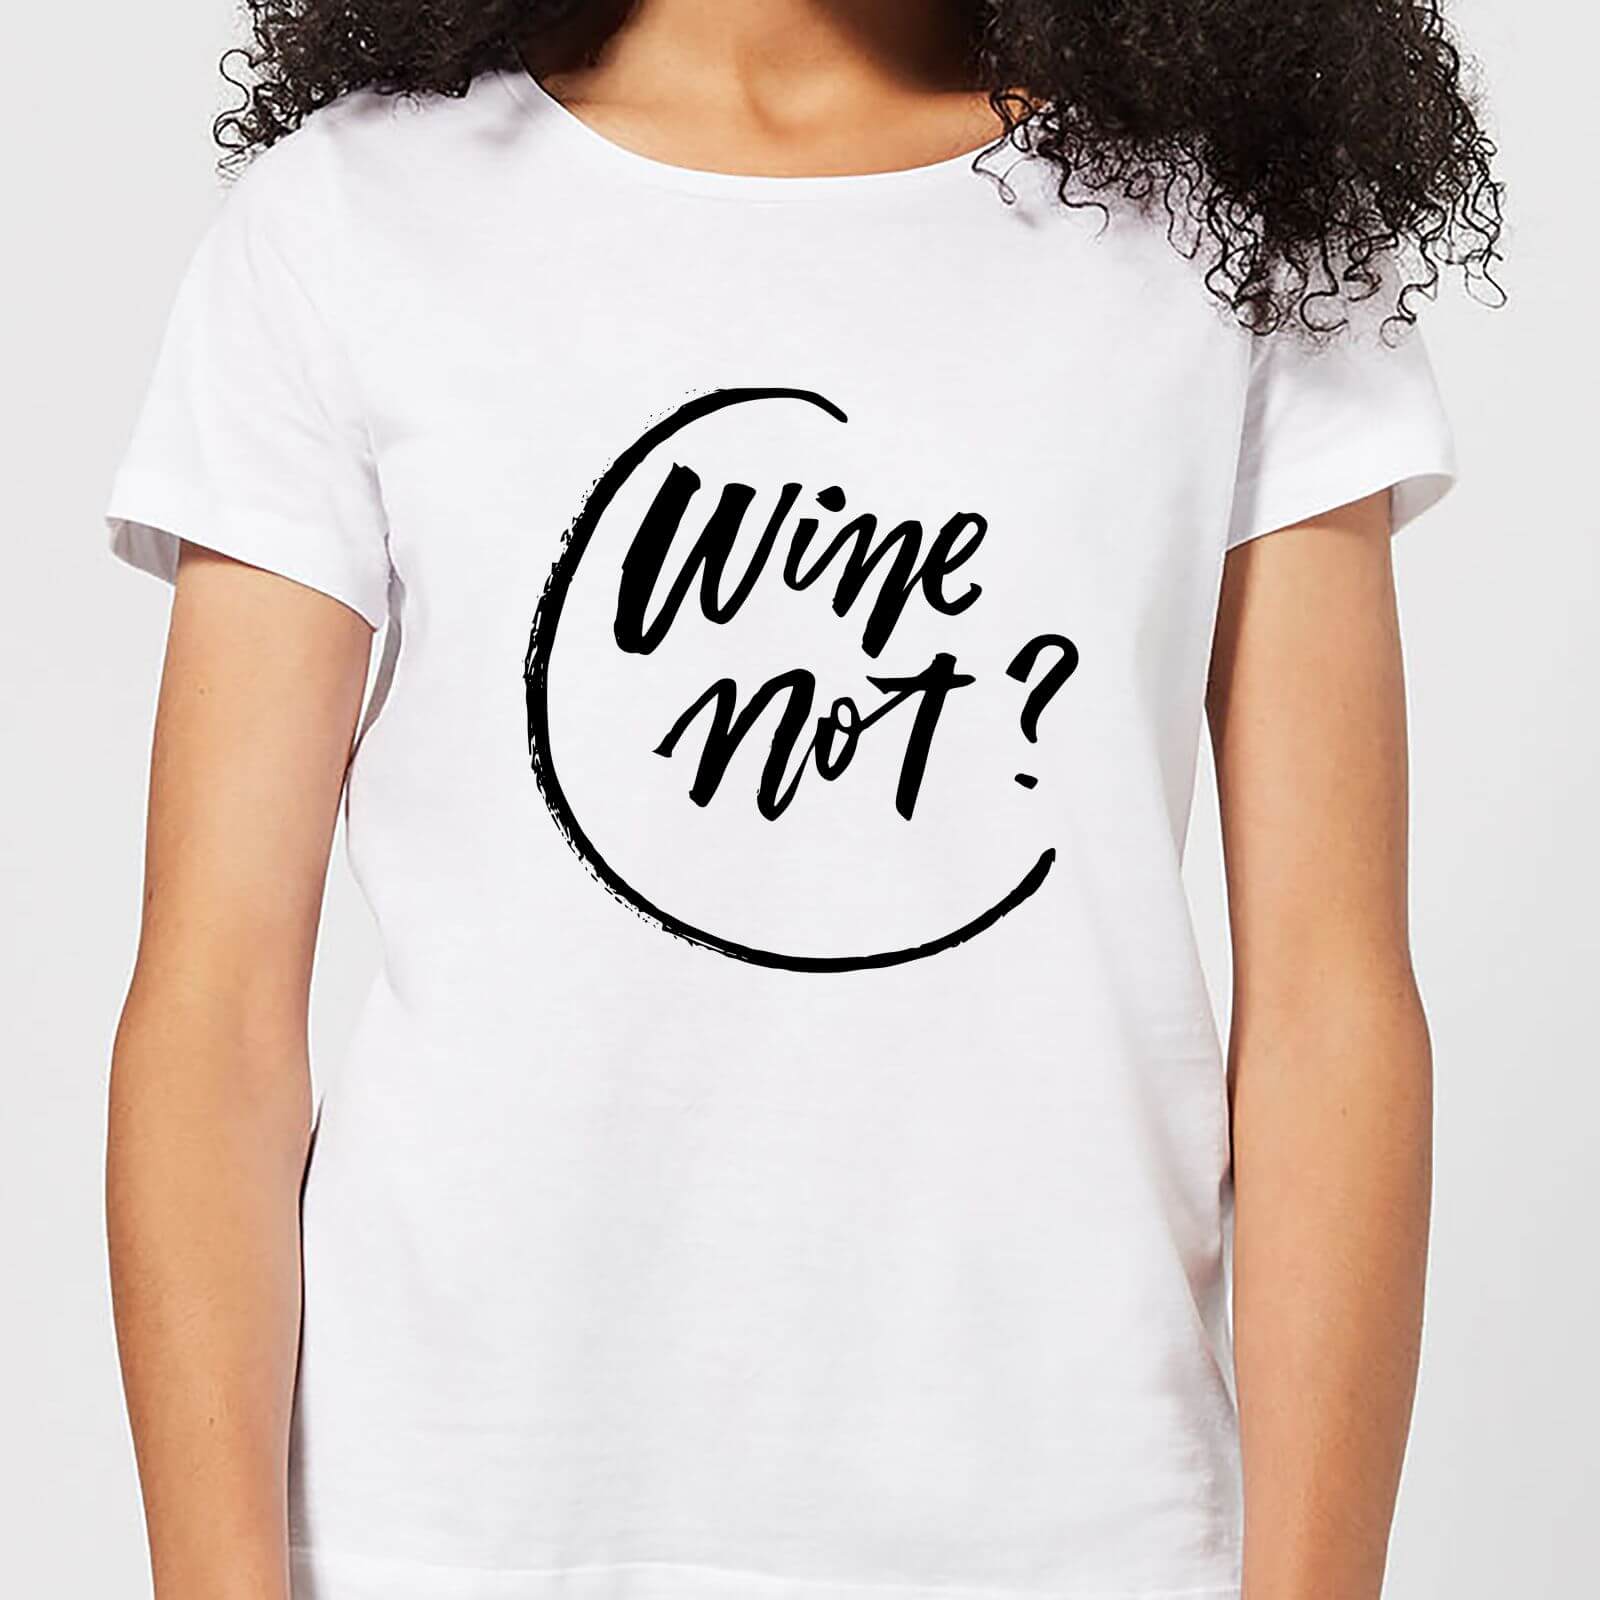 Wine Not? Women's T-Shirt - White - M - White